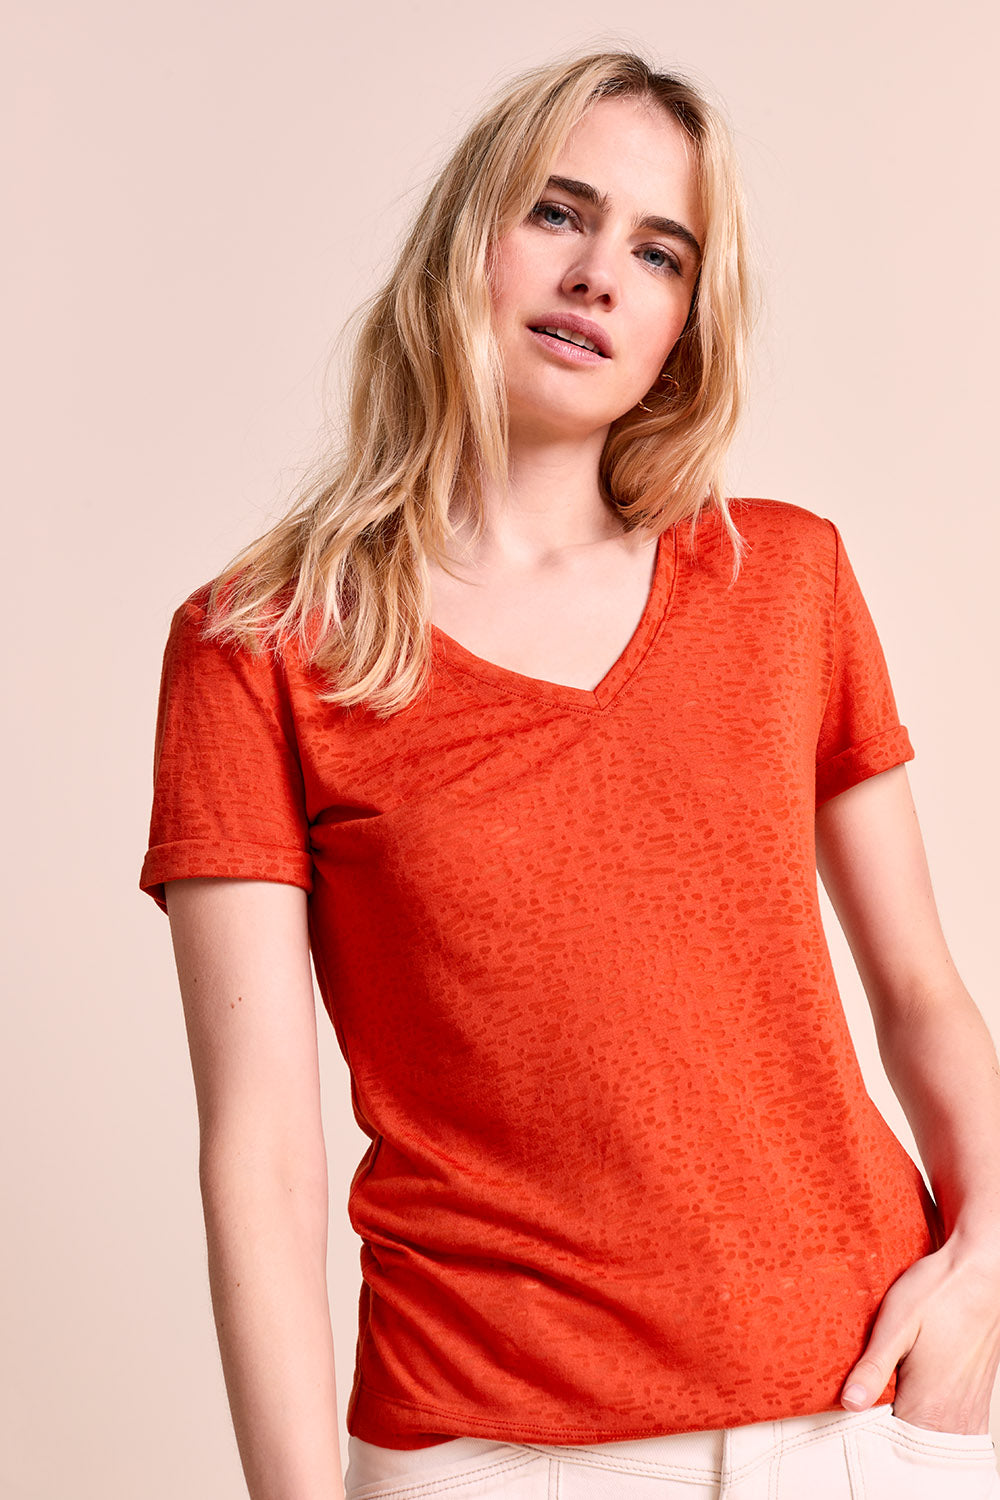 MEGGIE - T-shirt orange fluo en maille dévorée